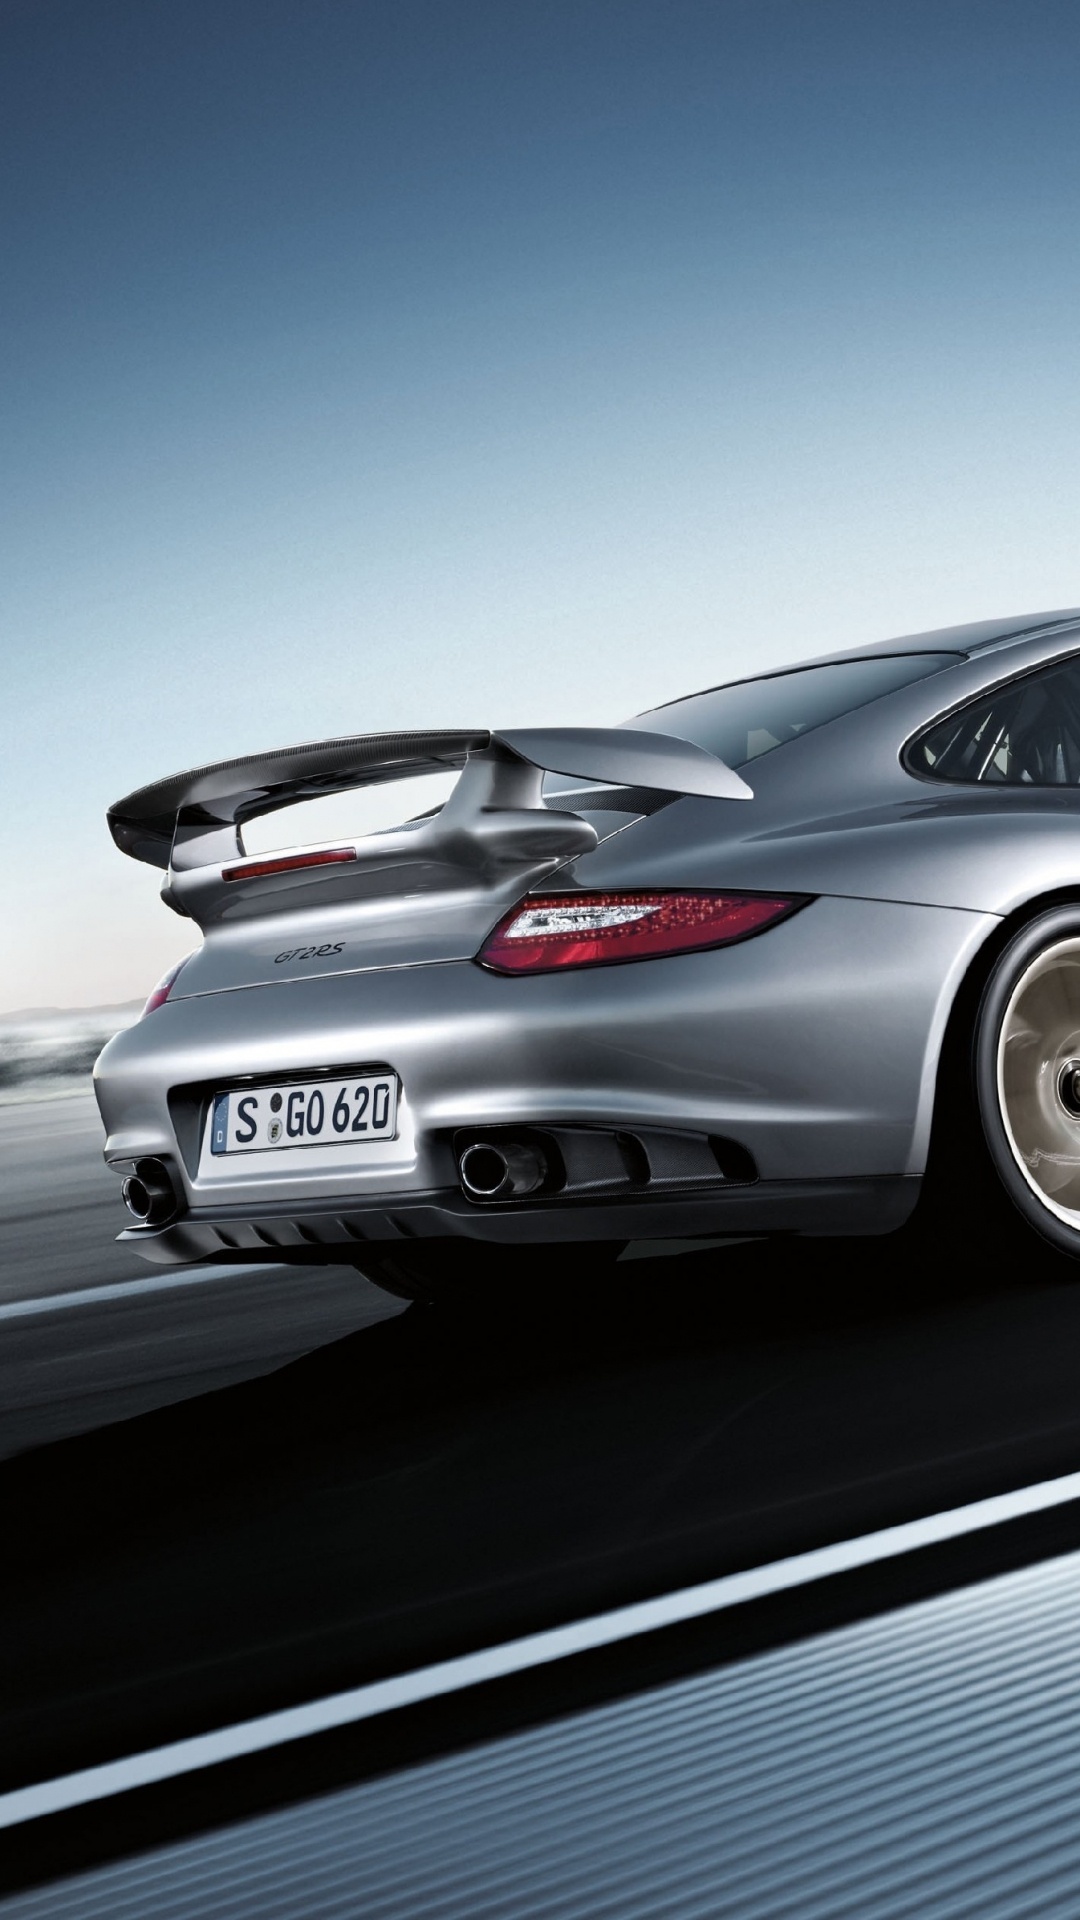 Porsche 911 Plateado Sobre Carretera de Asfalto Gris. Wallpaper in 1080x1920 Resolution